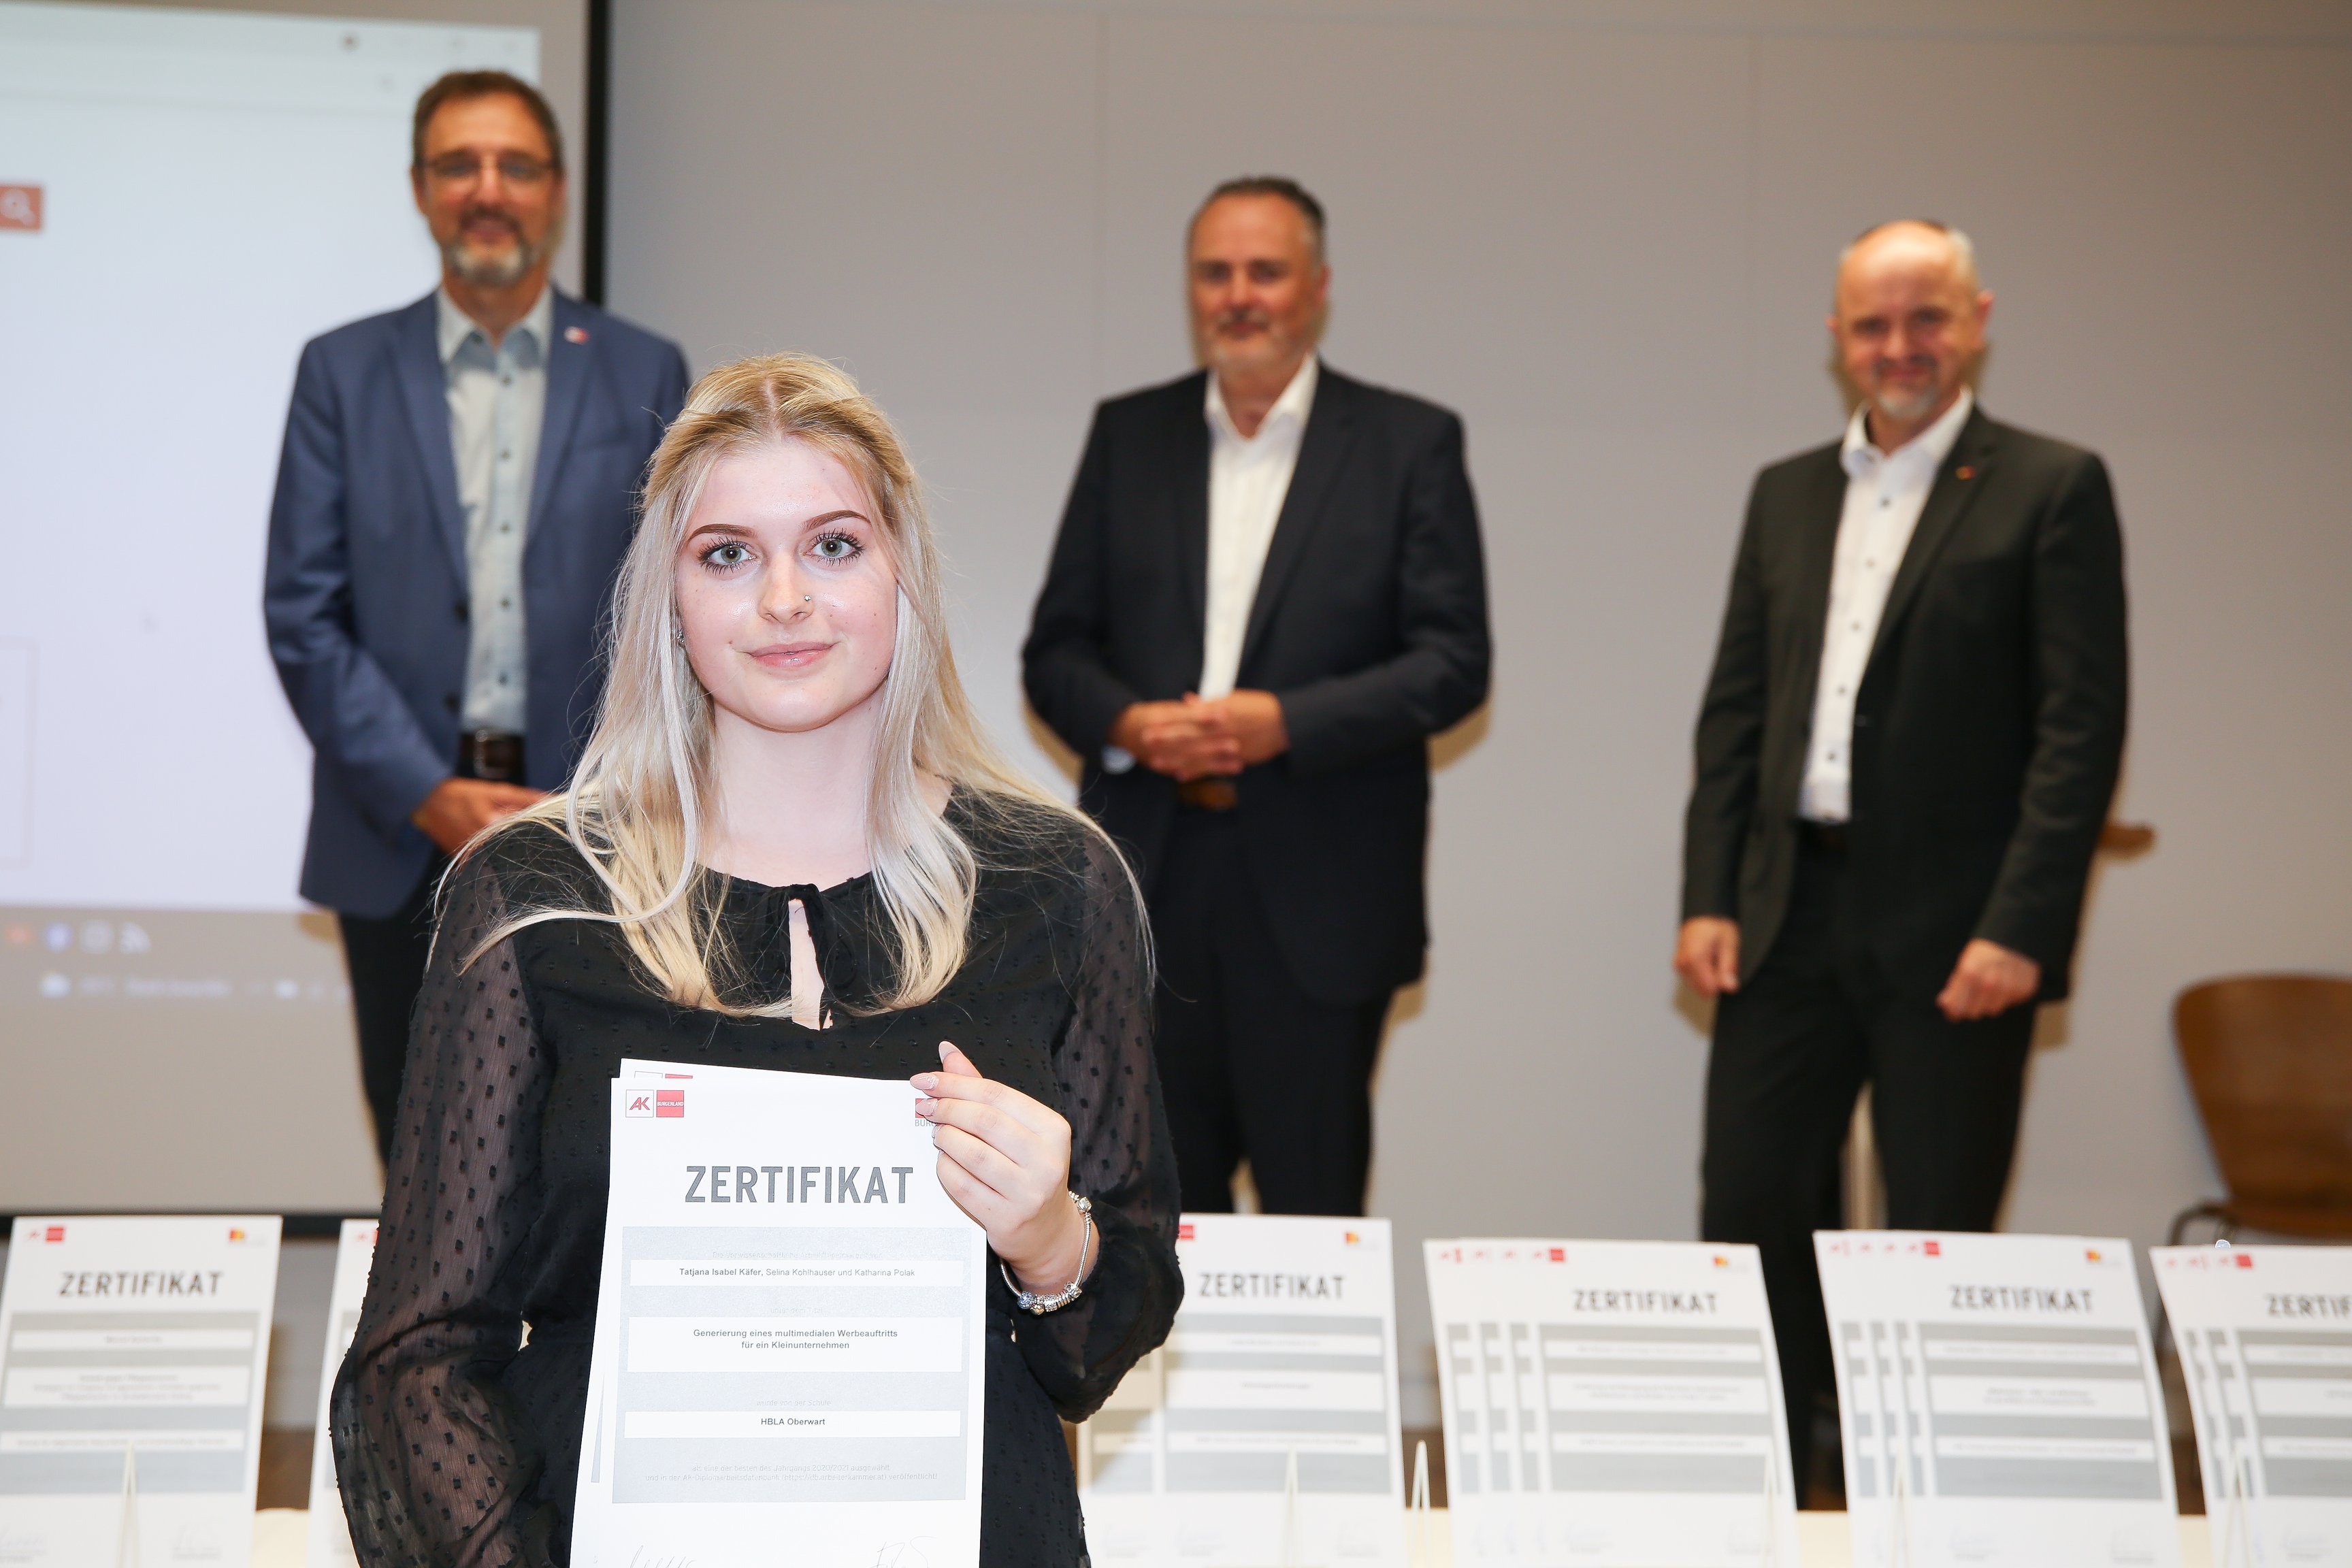 Schülerin der Schule "HBLA Oberwart" erhält Zertifikat für ihre schriftliche Arbeit "Generierung eines multimedialen Werbeauftritts für ein Kleinunternehmen".